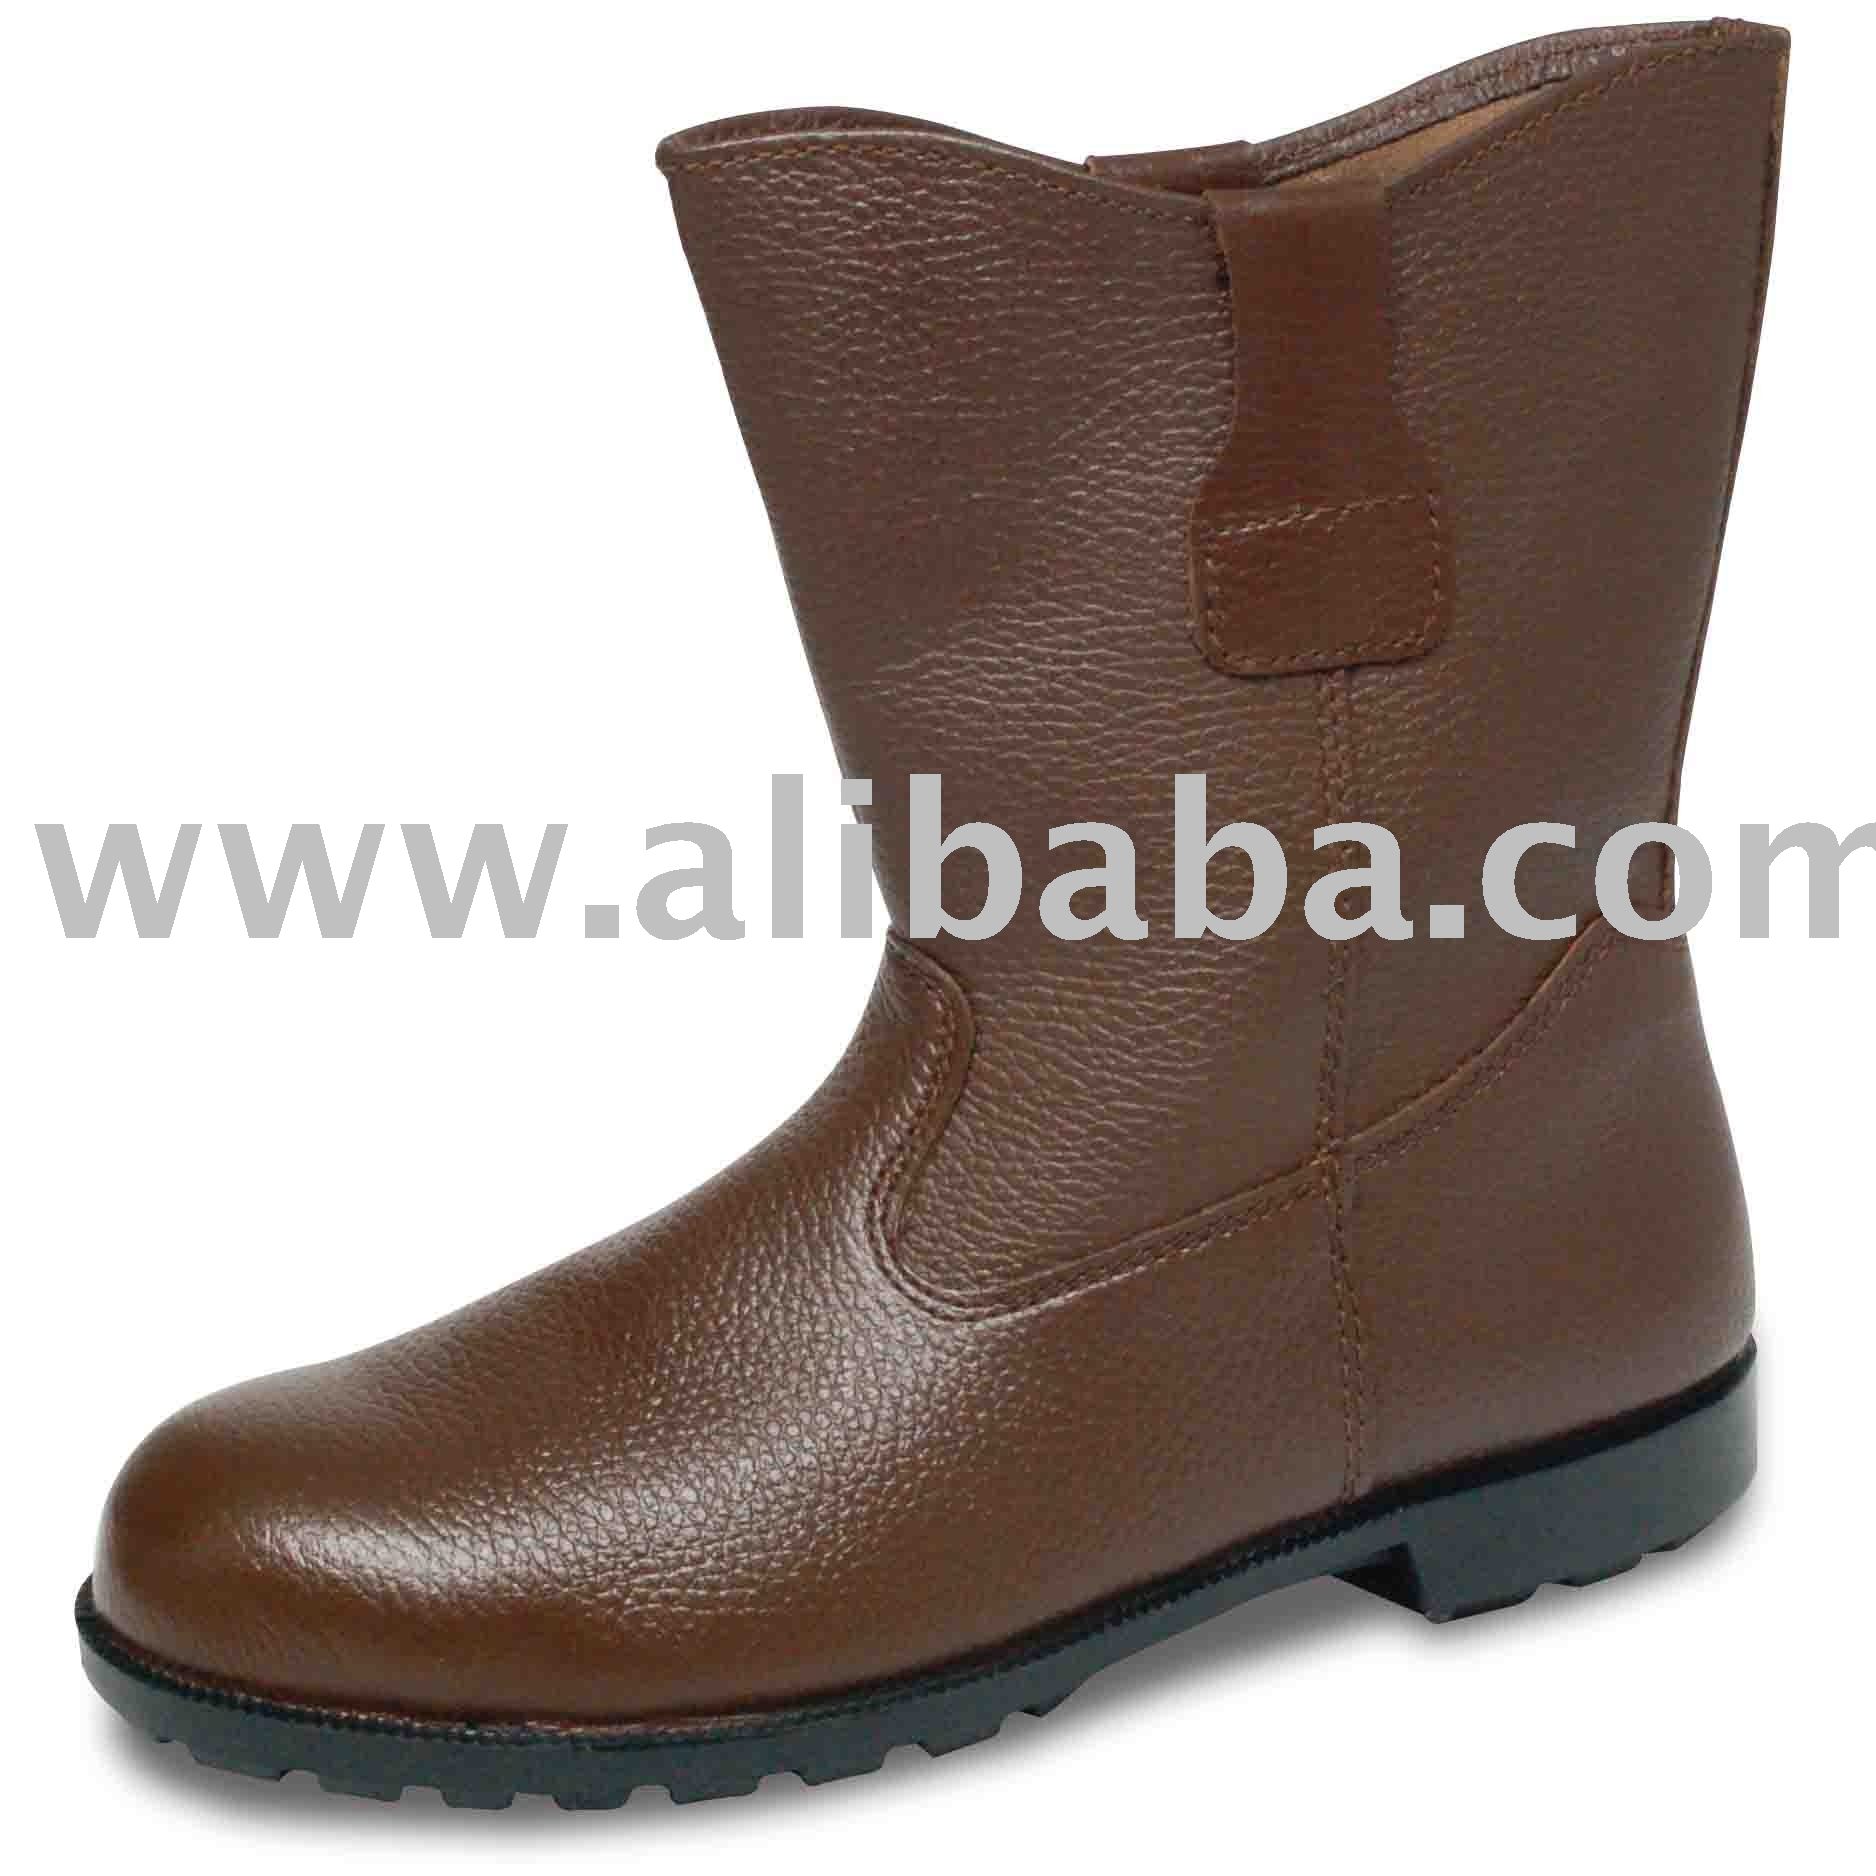 Shoes safety shoes Safety on St Safety Alibaba.com  Unicorn Product Shoes Buy  338 unicorn